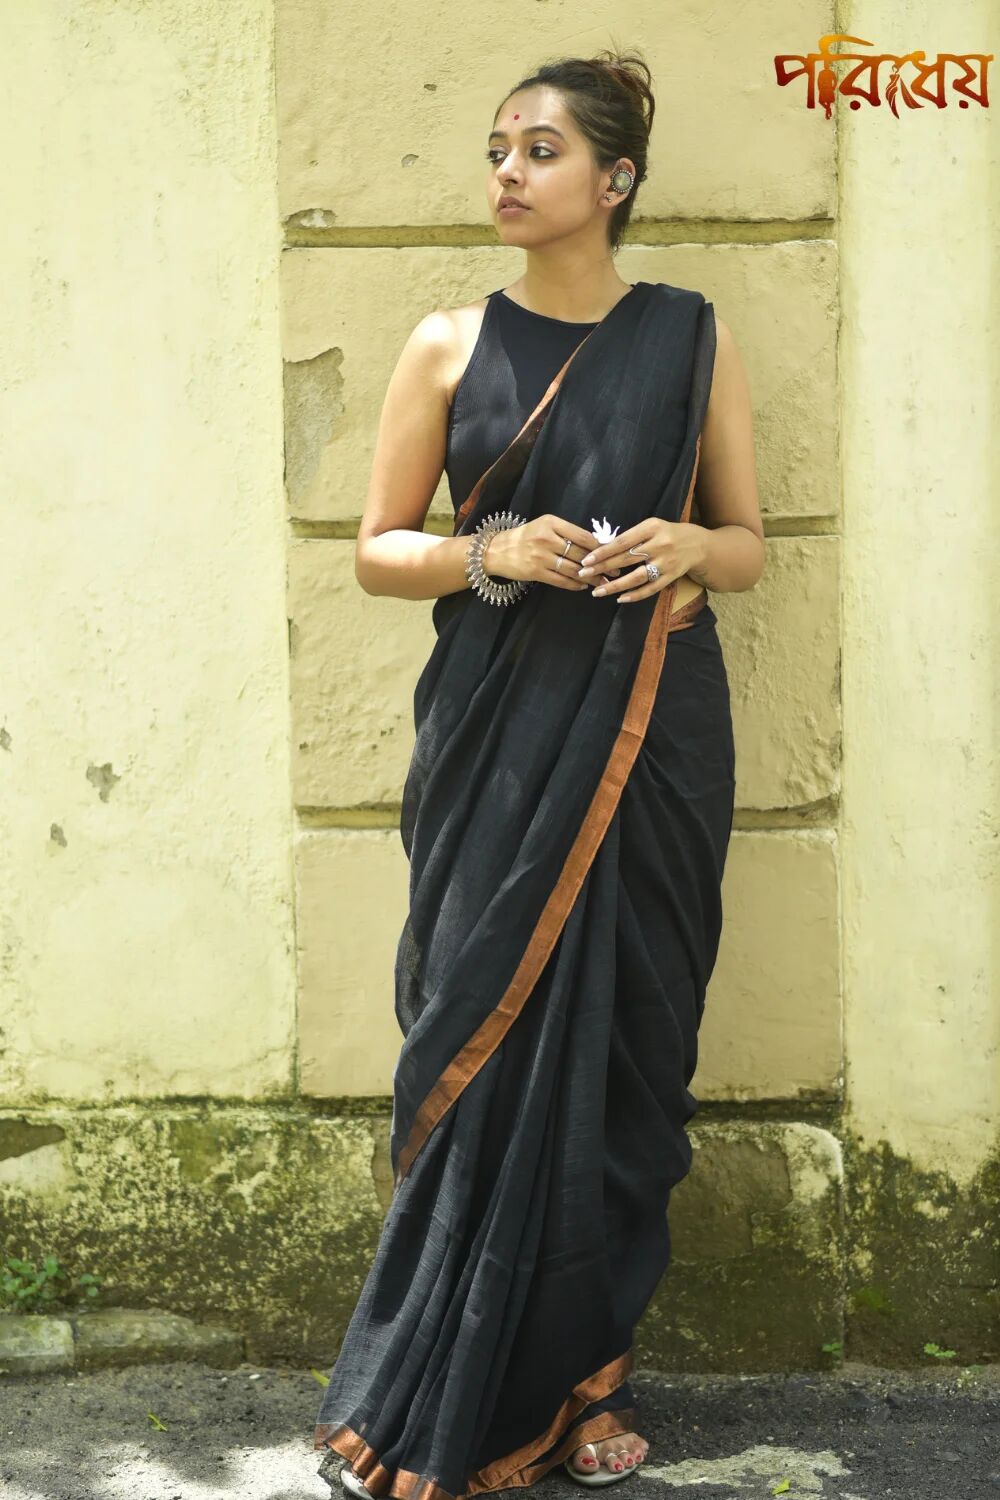 Purchase the Black Handloom Linen Saree at Poridheo! - Kolkata Clothing